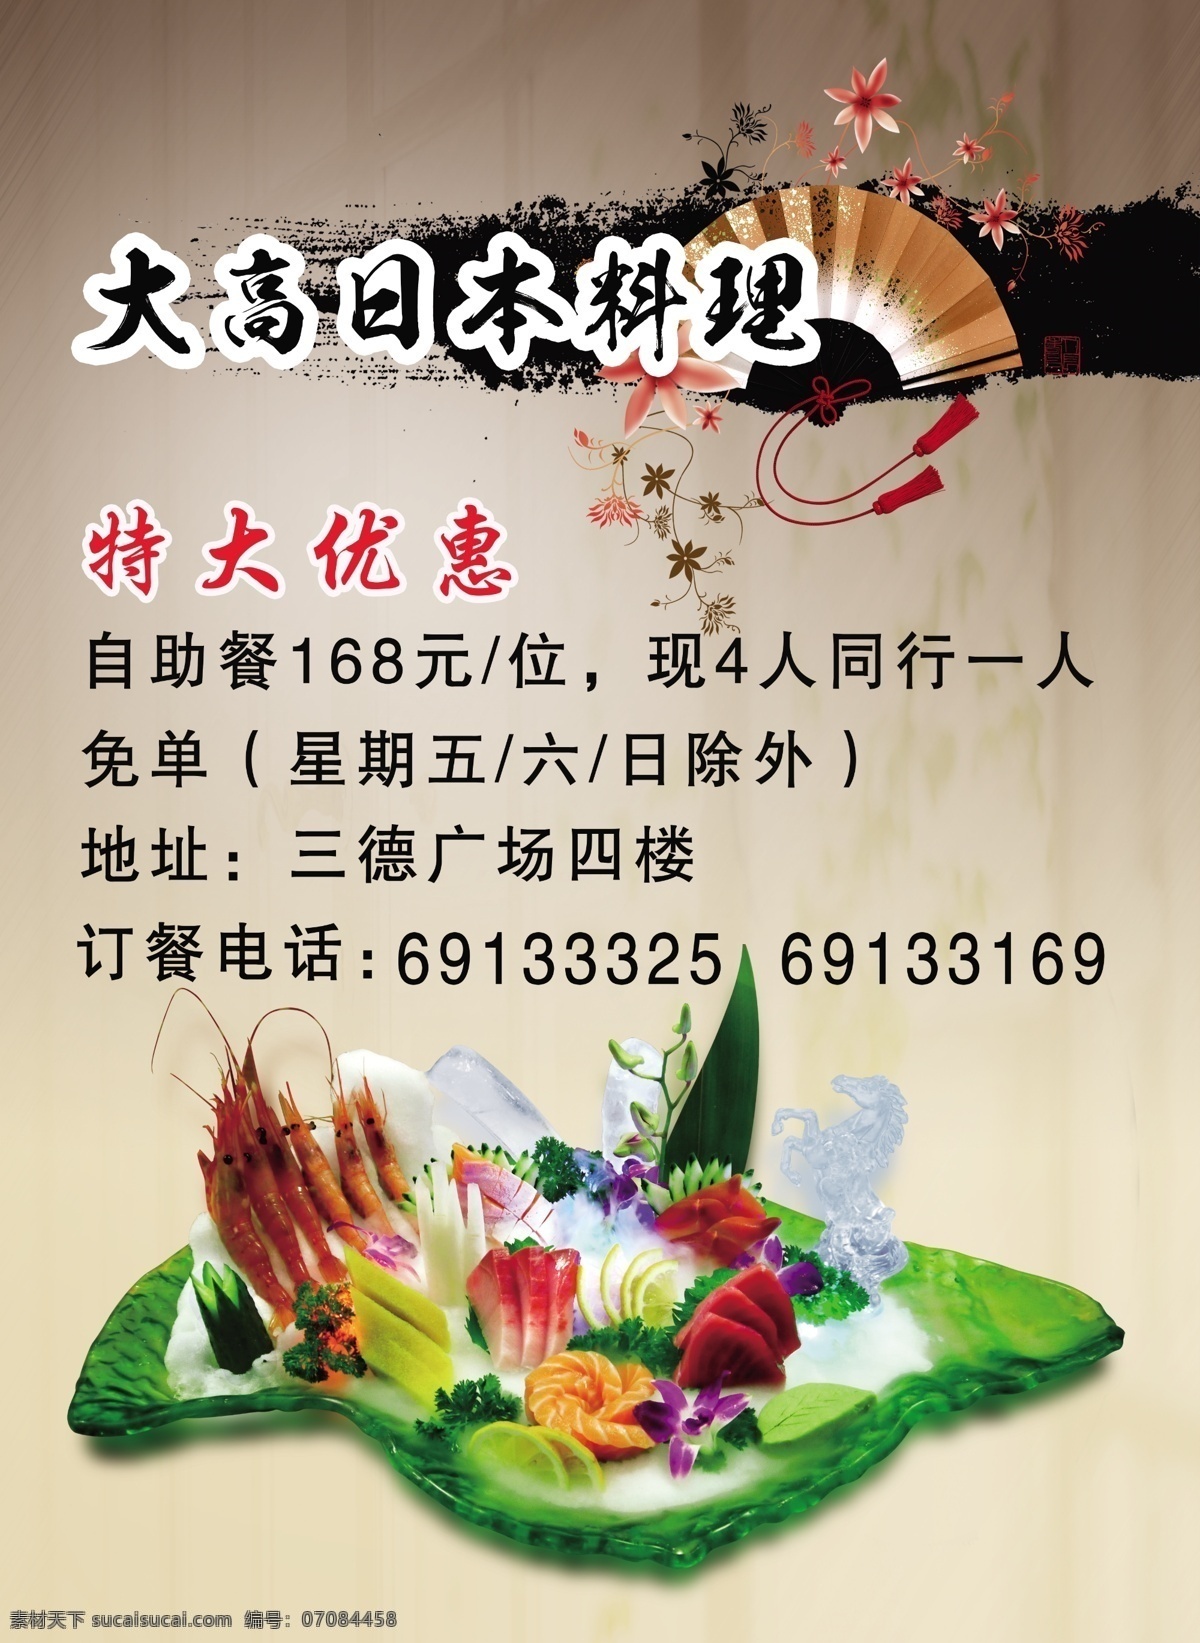 日本料理 餐饮 海报 宣传单 日本 食 材 文化 料理 淘宝素材 淘宝设计 淘宝模板下载